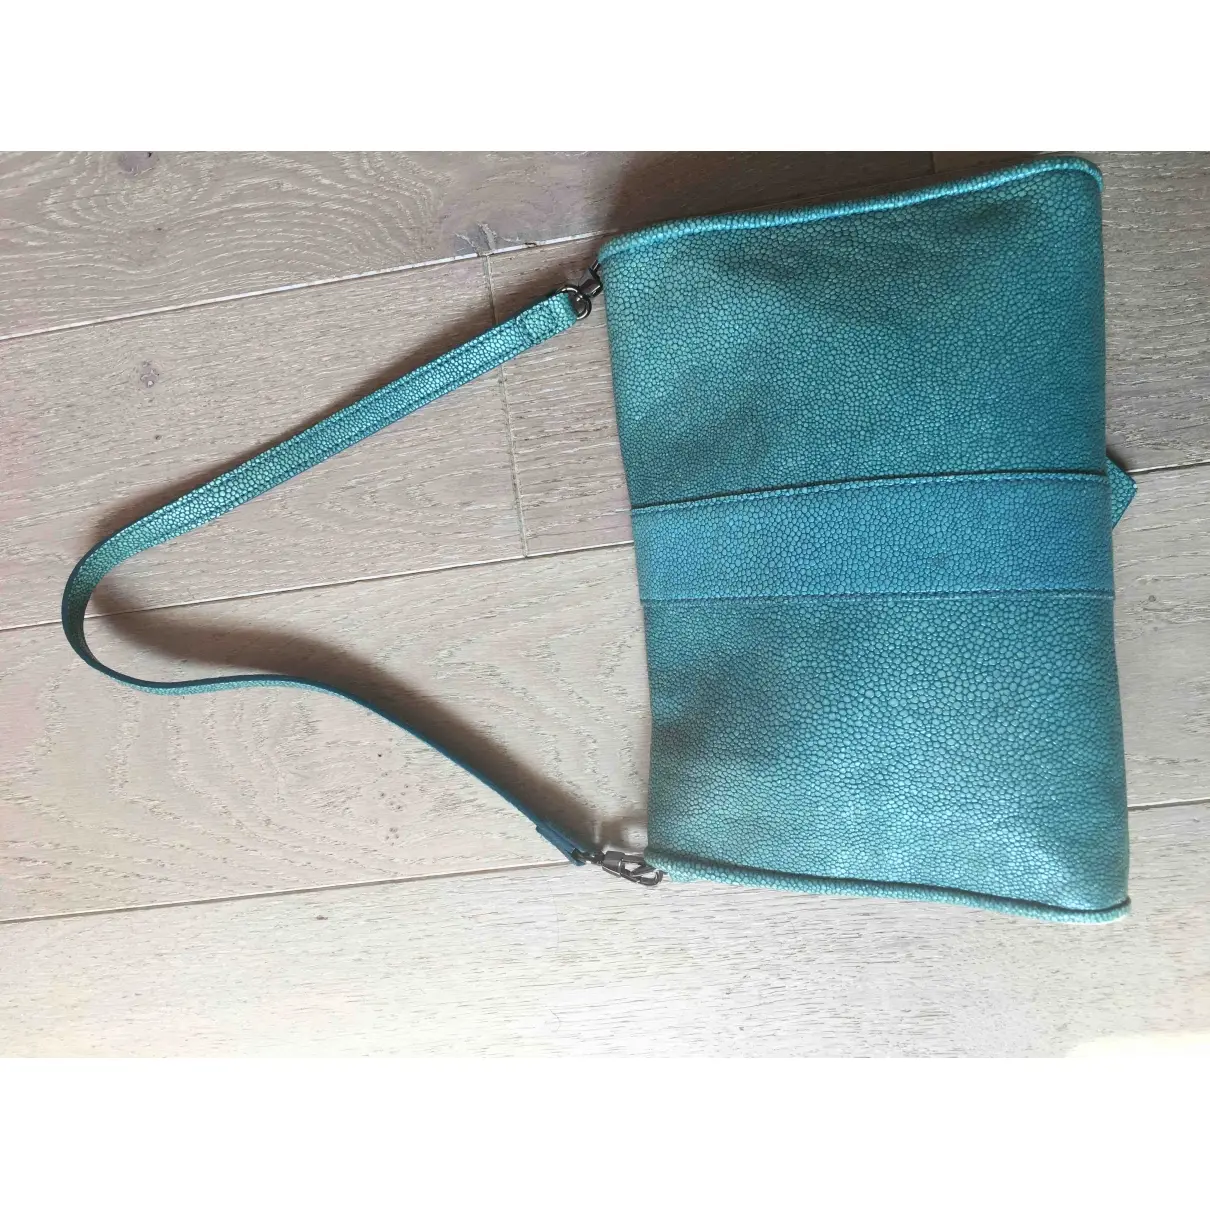 Longchamp Kate Moss leather handbag for sale